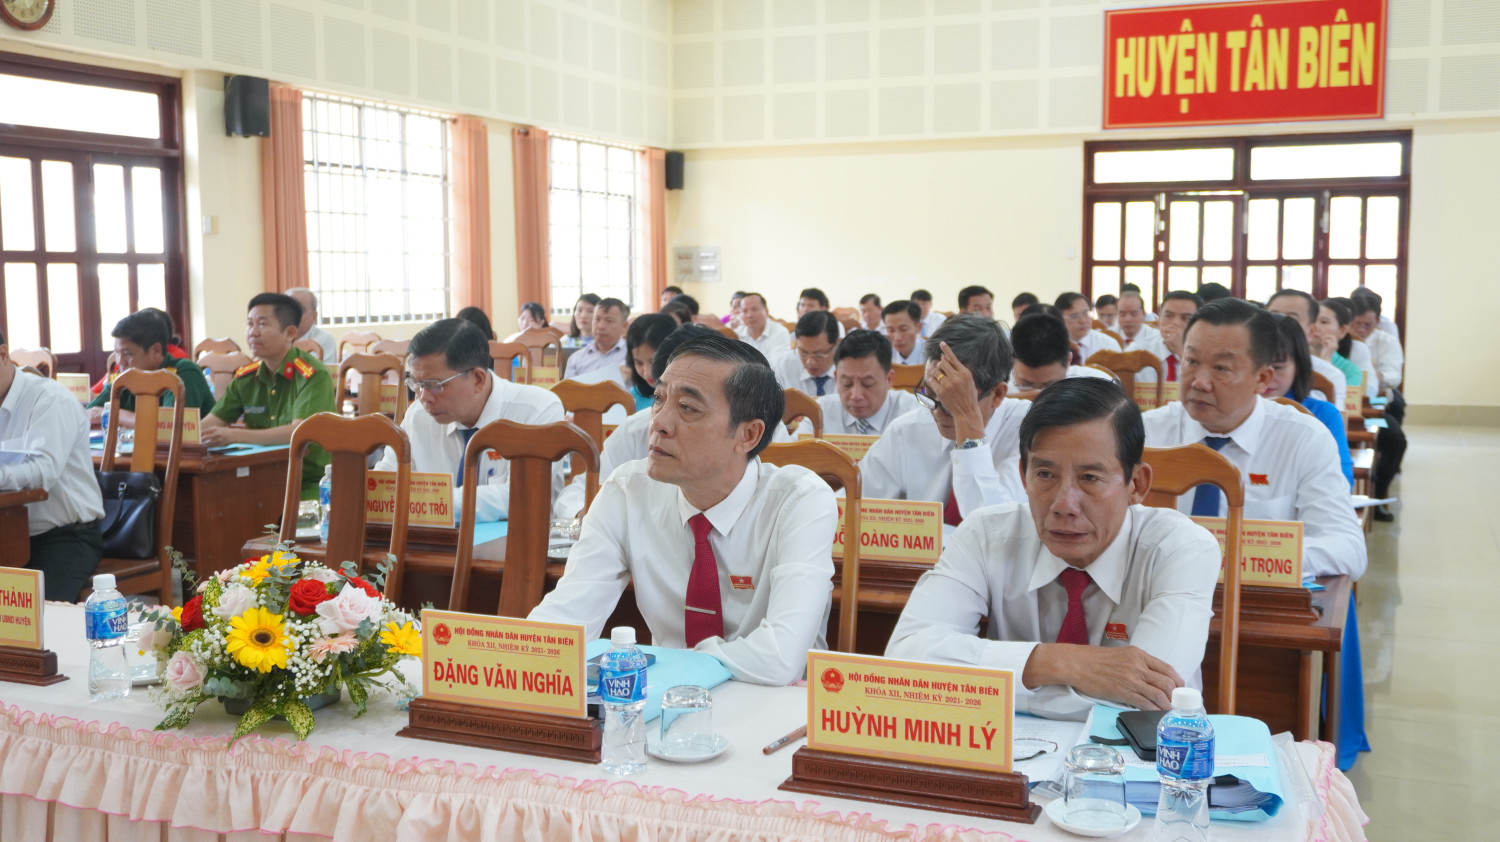 Tân Biên: Khai mạc kỳ họp thứ 8 HĐND huyện Tân Biên khóa XII, nhiệm kỳ 2021 – 2026.